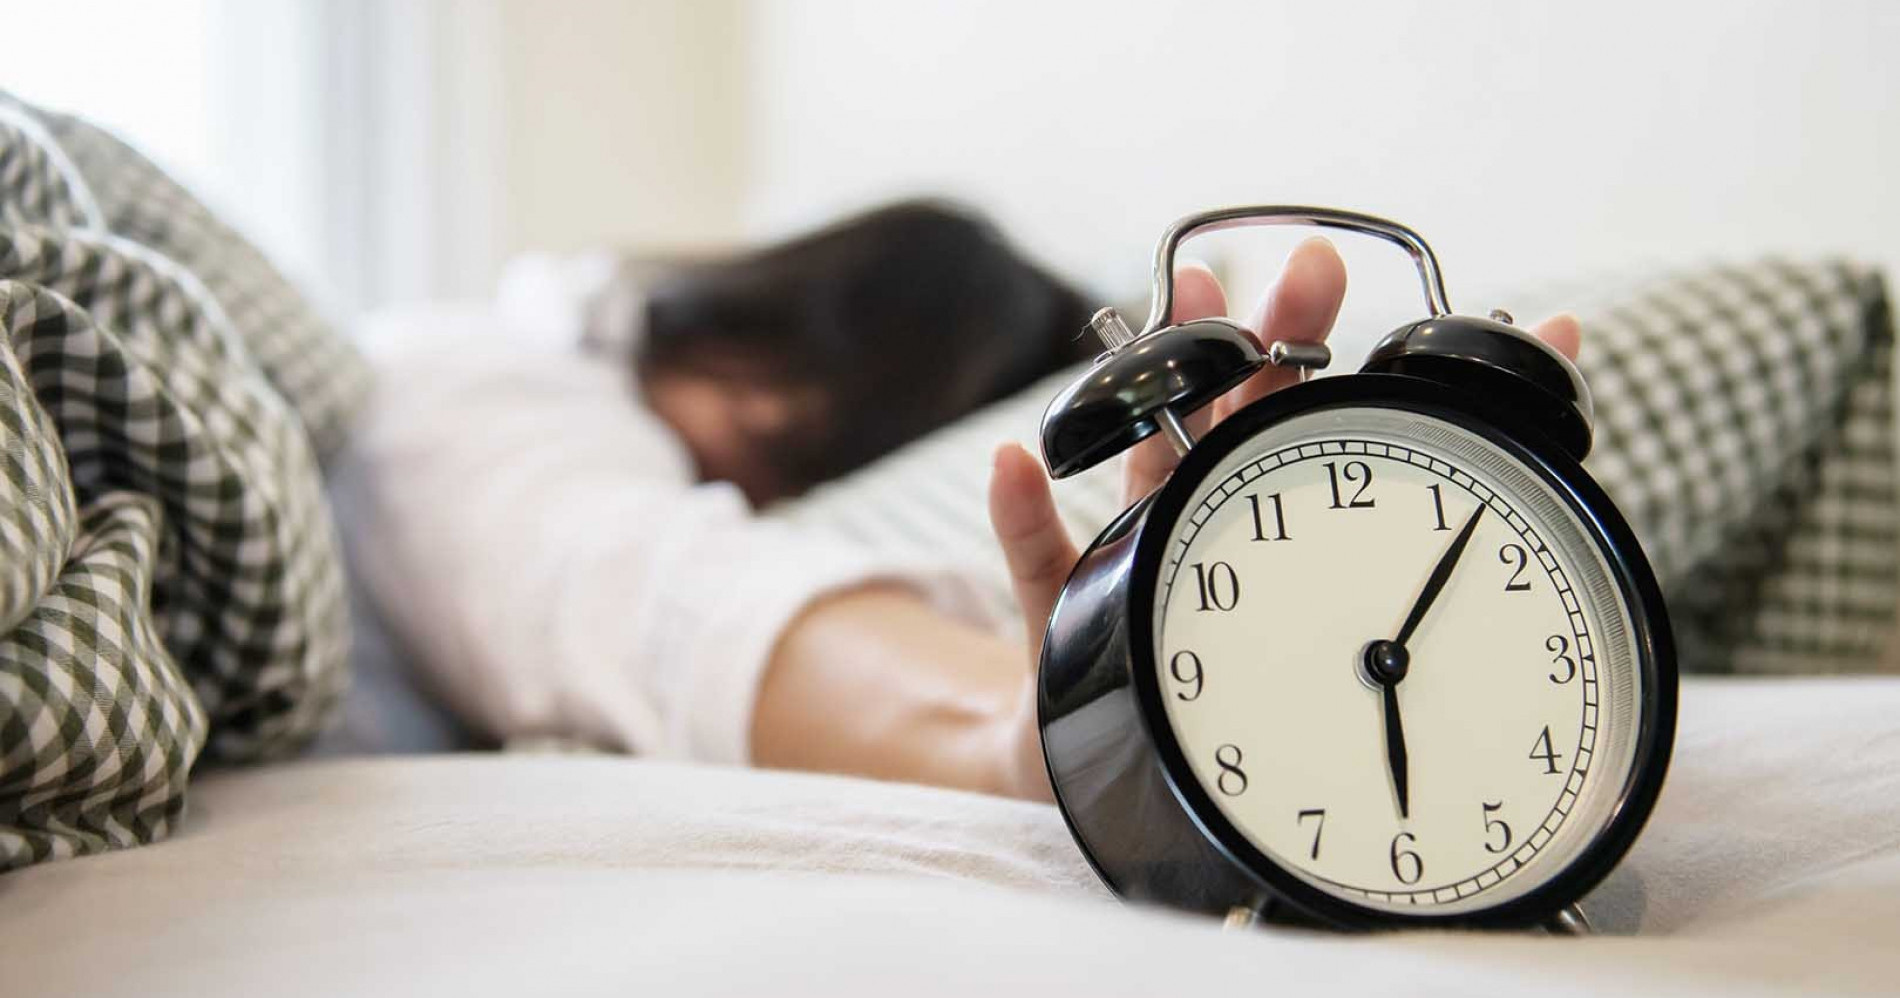 Mulai sekarang, mari kita jadikan tidur yang cukup sebagai prioritas utama untuk menjaga kesehatan dan kebugaran kita! (Sumber Gambar: Jove)